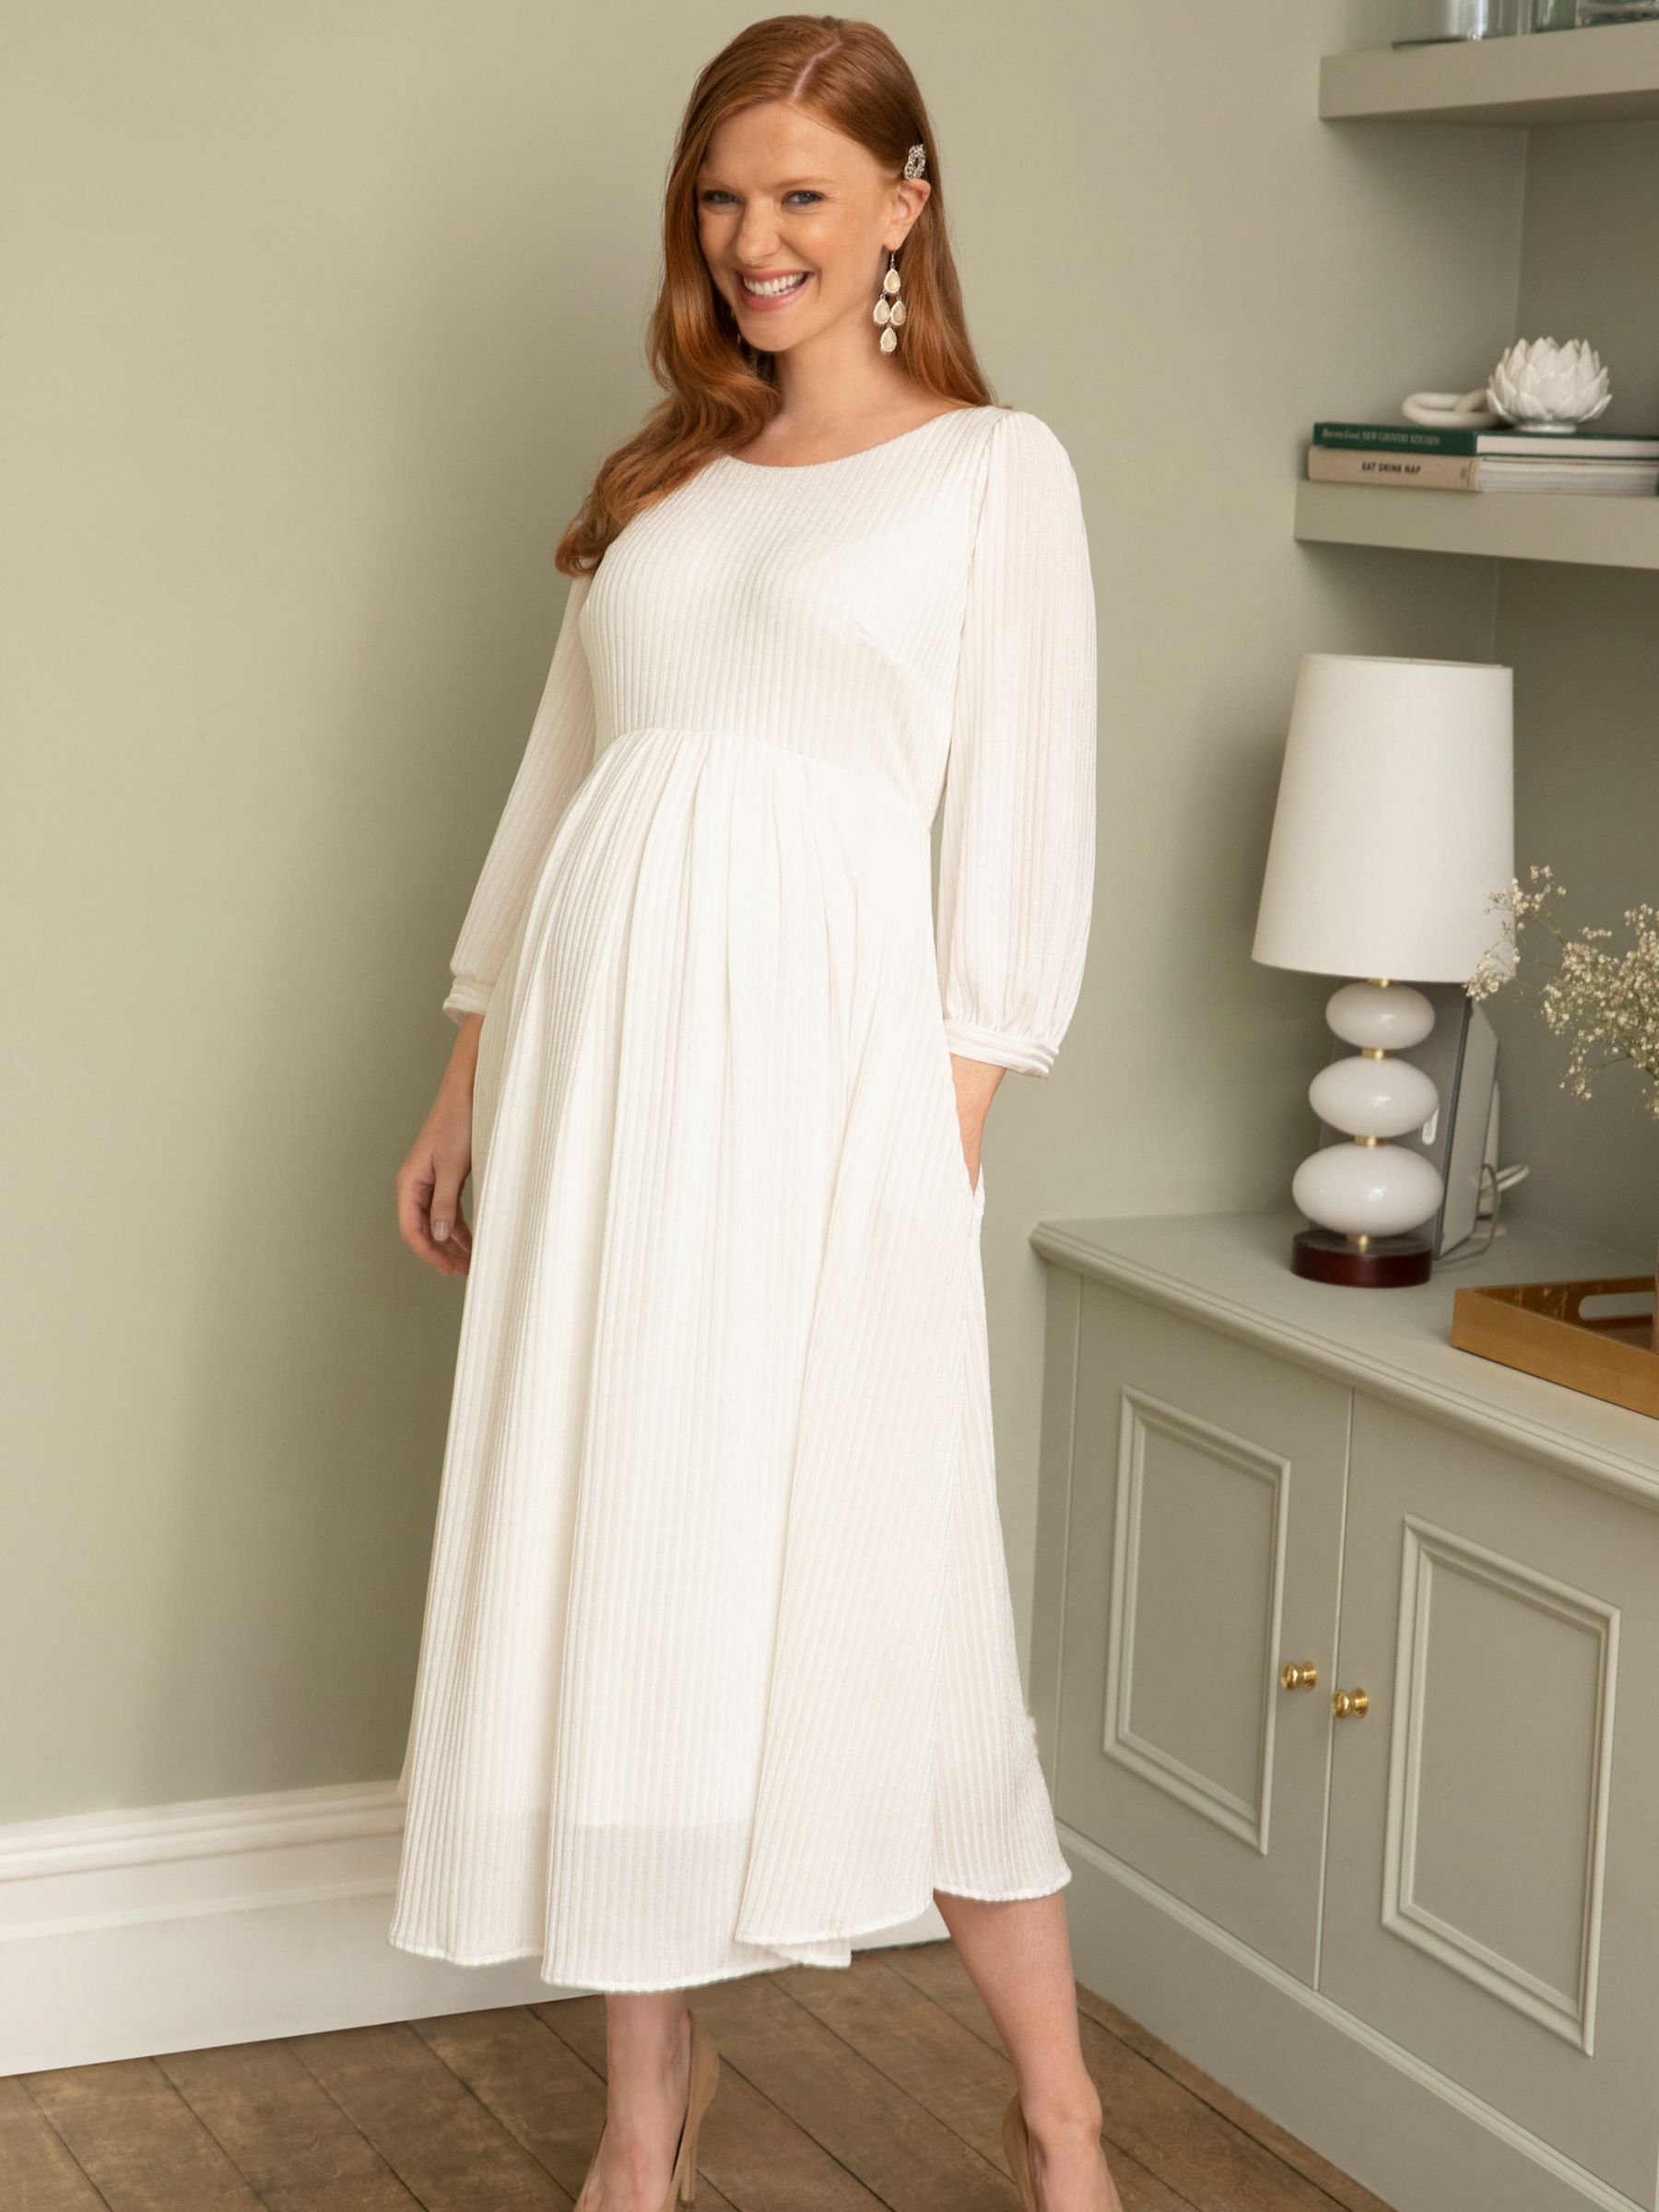 Tiffany Rose Maternity Isla Maternity Ribbed Jersey Dress, Ivory, 14-16